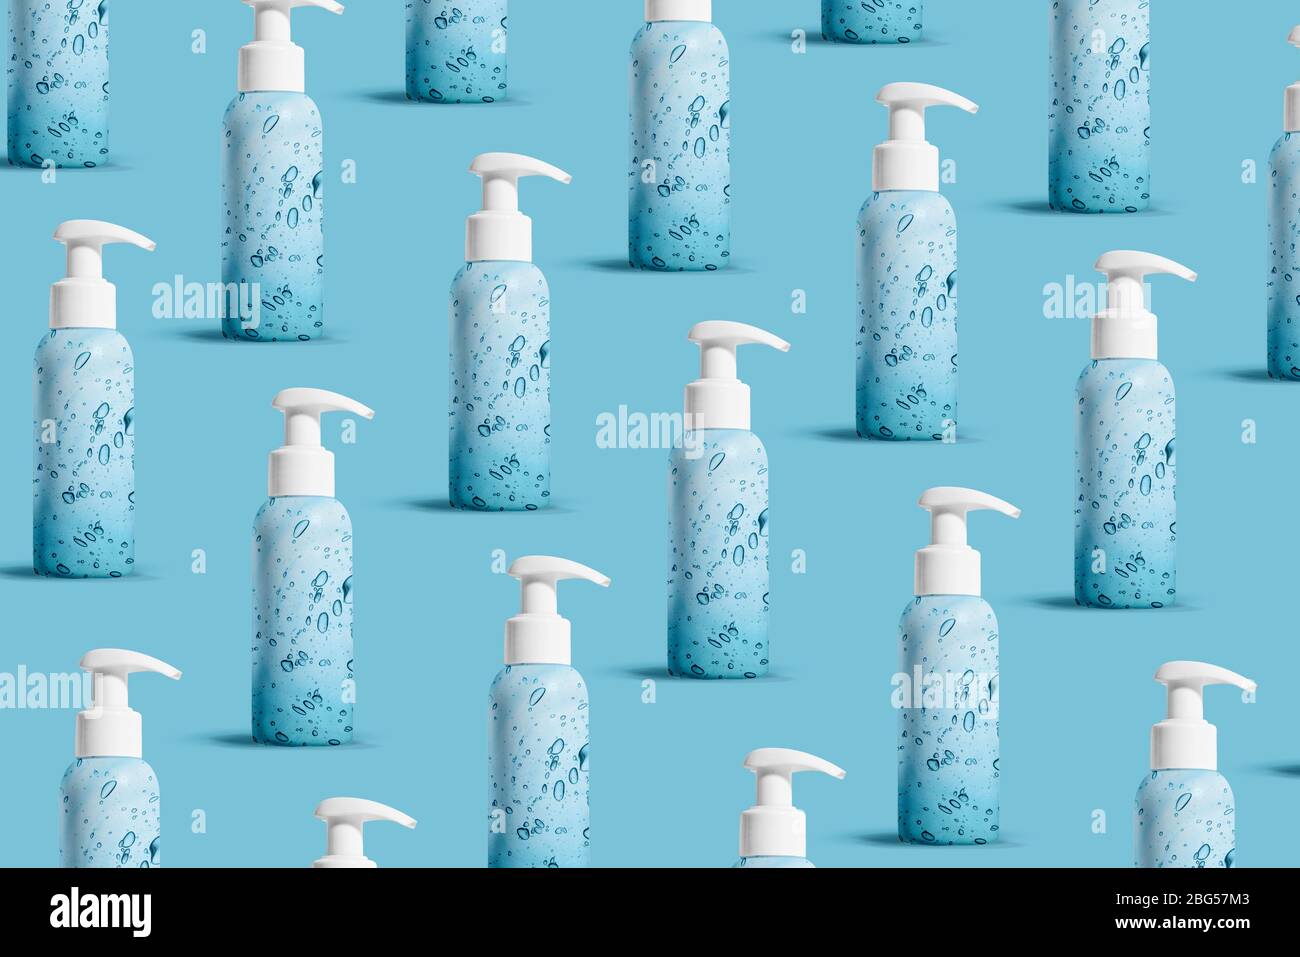 Coronavirus prevention hand sanitizer gel for hand hygiene corona virus protection. Hygiene concept. Pattern Stock Photo